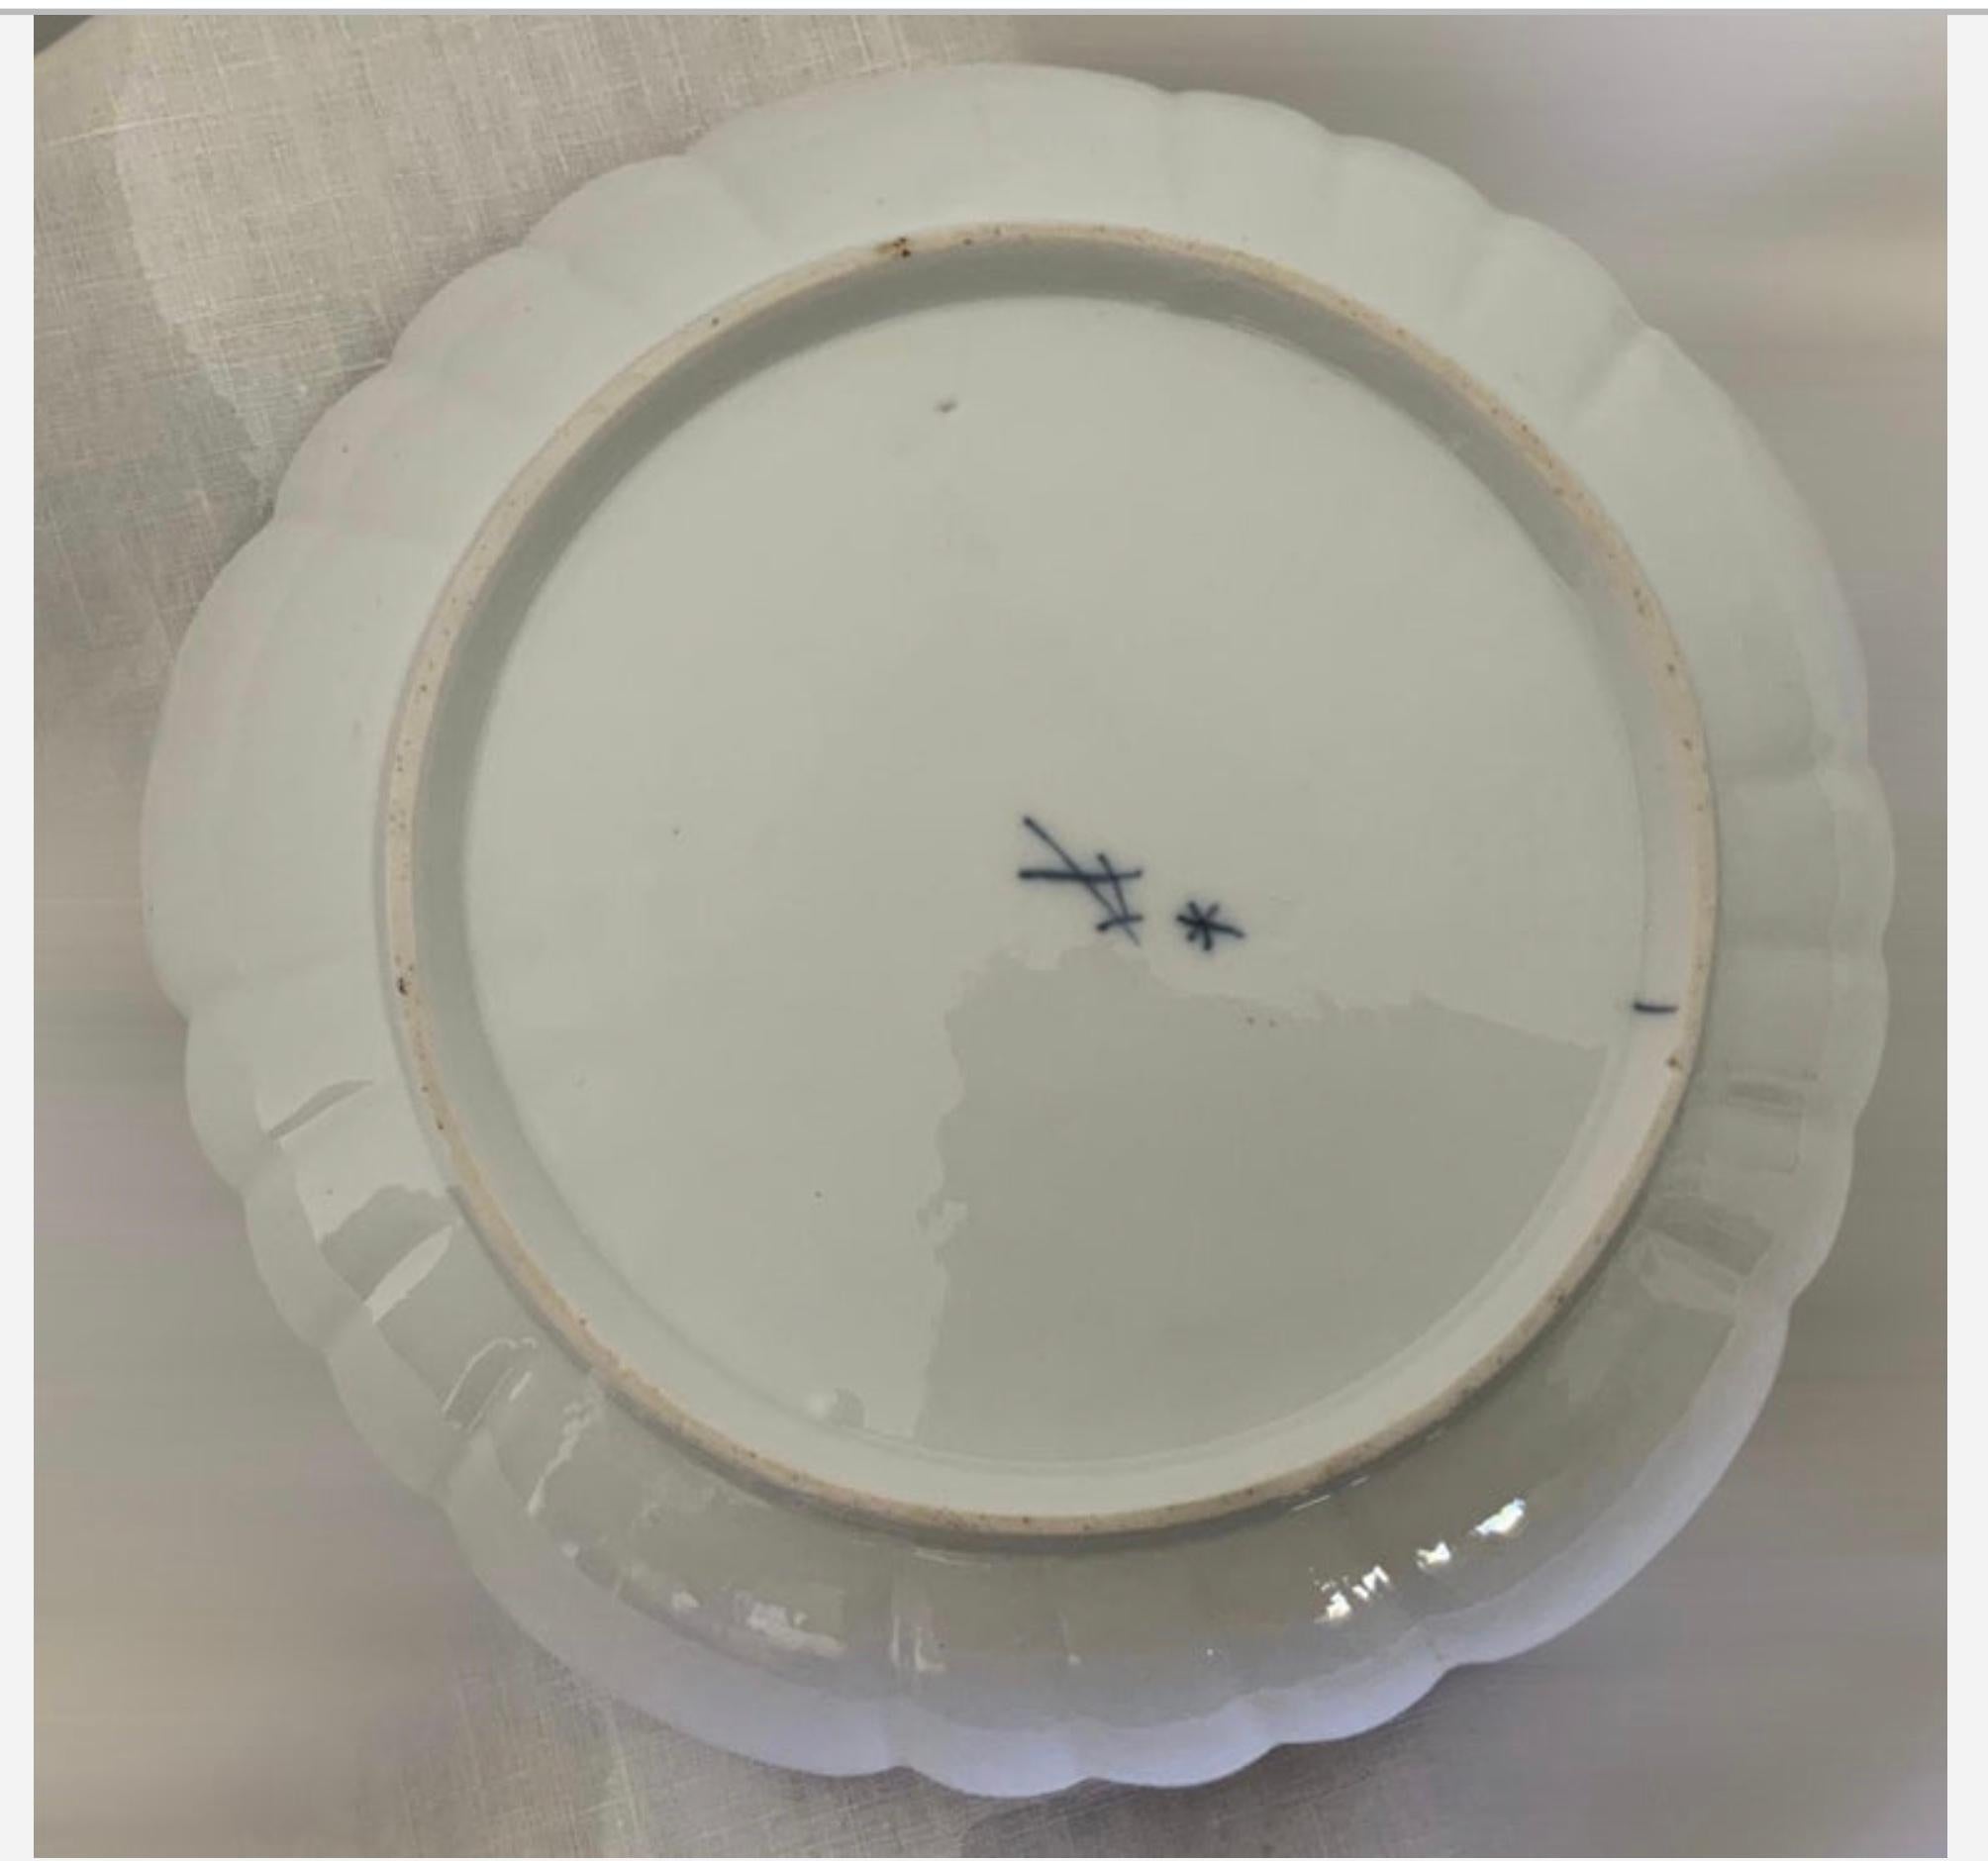 Il s'agit d'un ensemble d'assiettes et de bols en porcelaine de Meissen peints à la main. Il représente au centre un couple de chérubins tenant une guirlande de fleurs et une couronne de feuilles vertes alors qu'ils sont au paradis. L'autre plaque